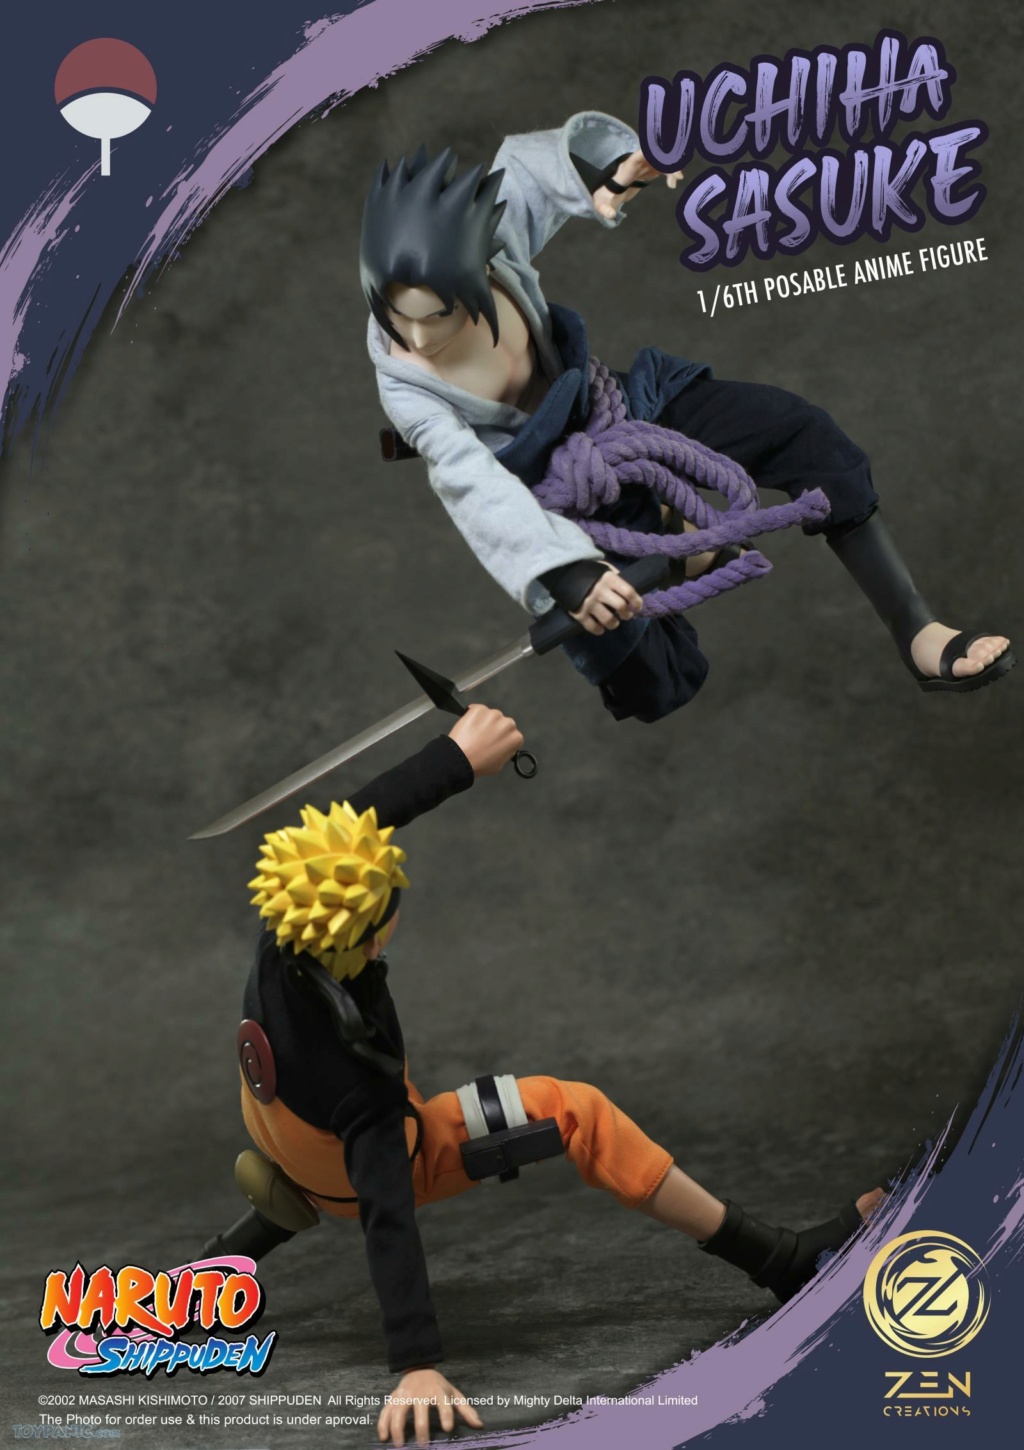 NarutoShippuden - NEW PRODUCT: Zen Creations: PAF003 1/6 Scale Sasuke Uchiha Anime Figure 14620241